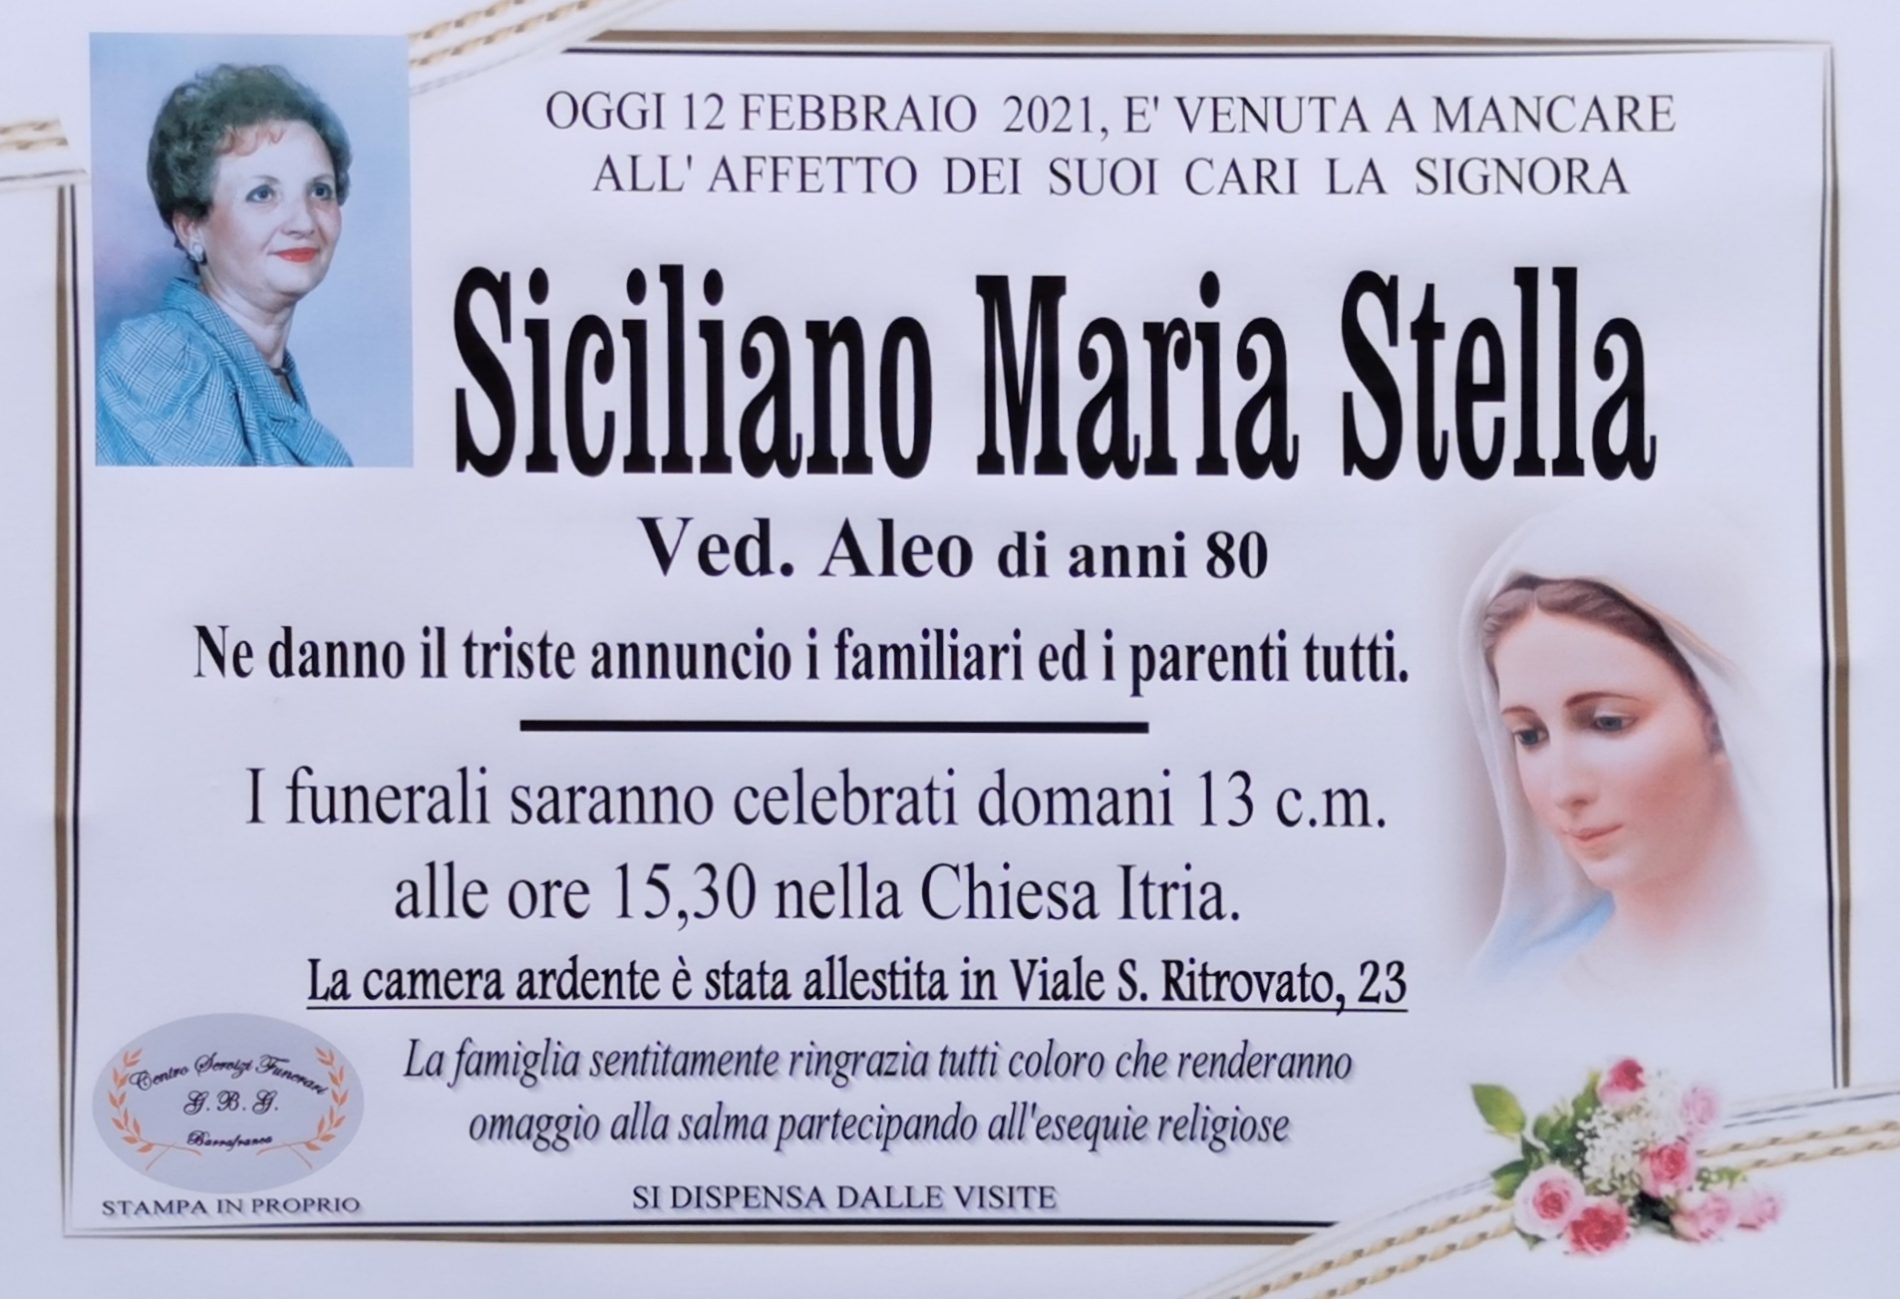 Annuncio servizi funerari agenzia G.B.G. sig.ra Siciliano Maria Stella ved. Aleo anni 80